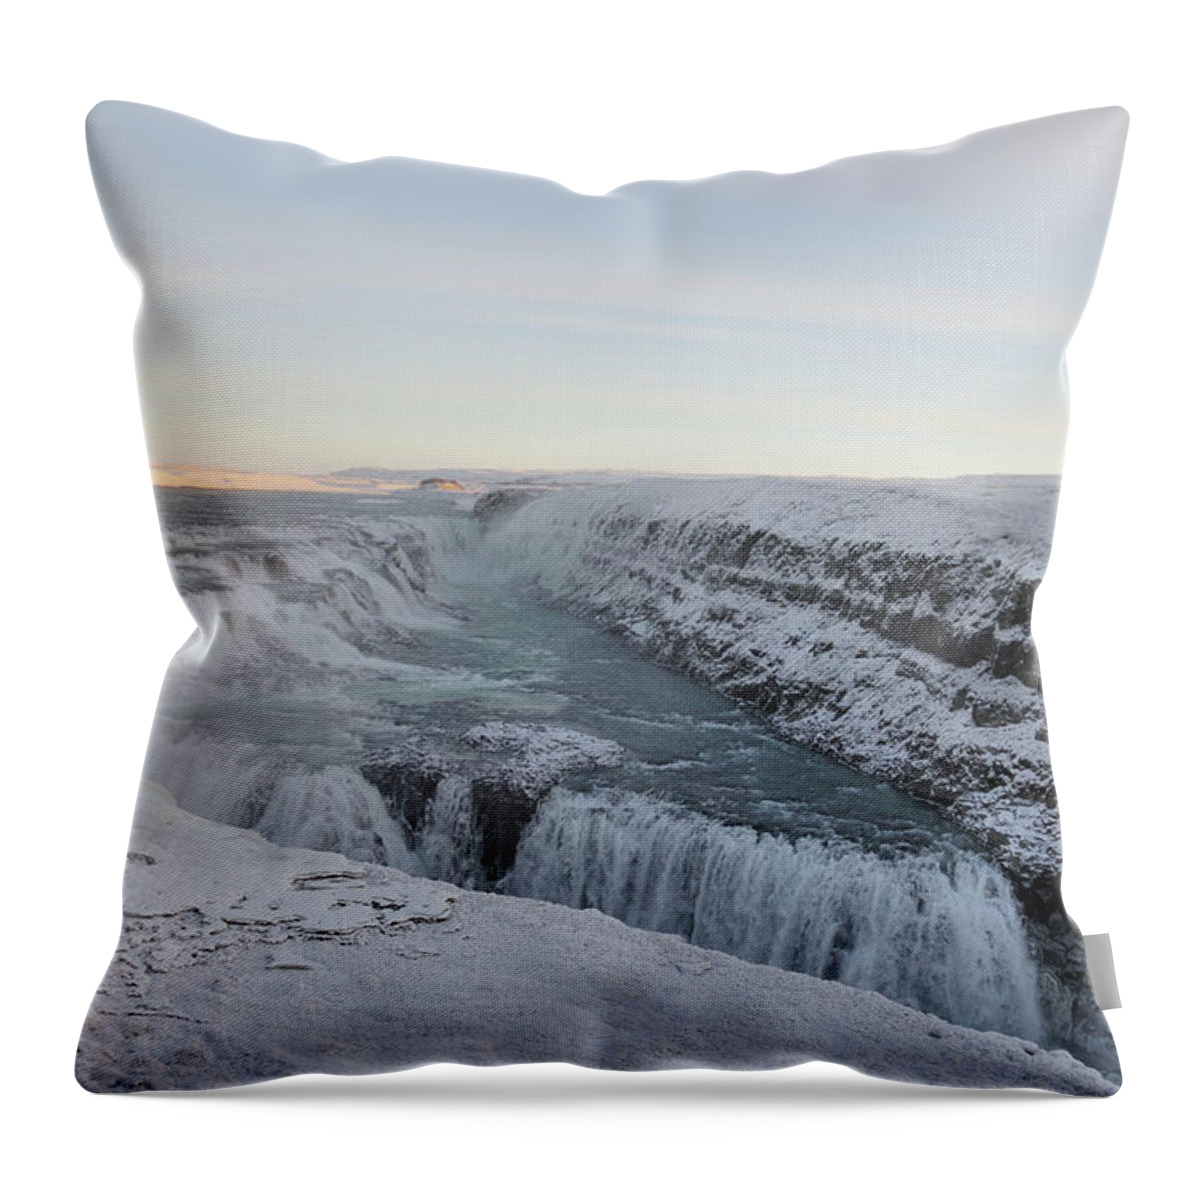 Scenics Throw Pillow featuring the photograph Gullfoss by Erik-jan Vens